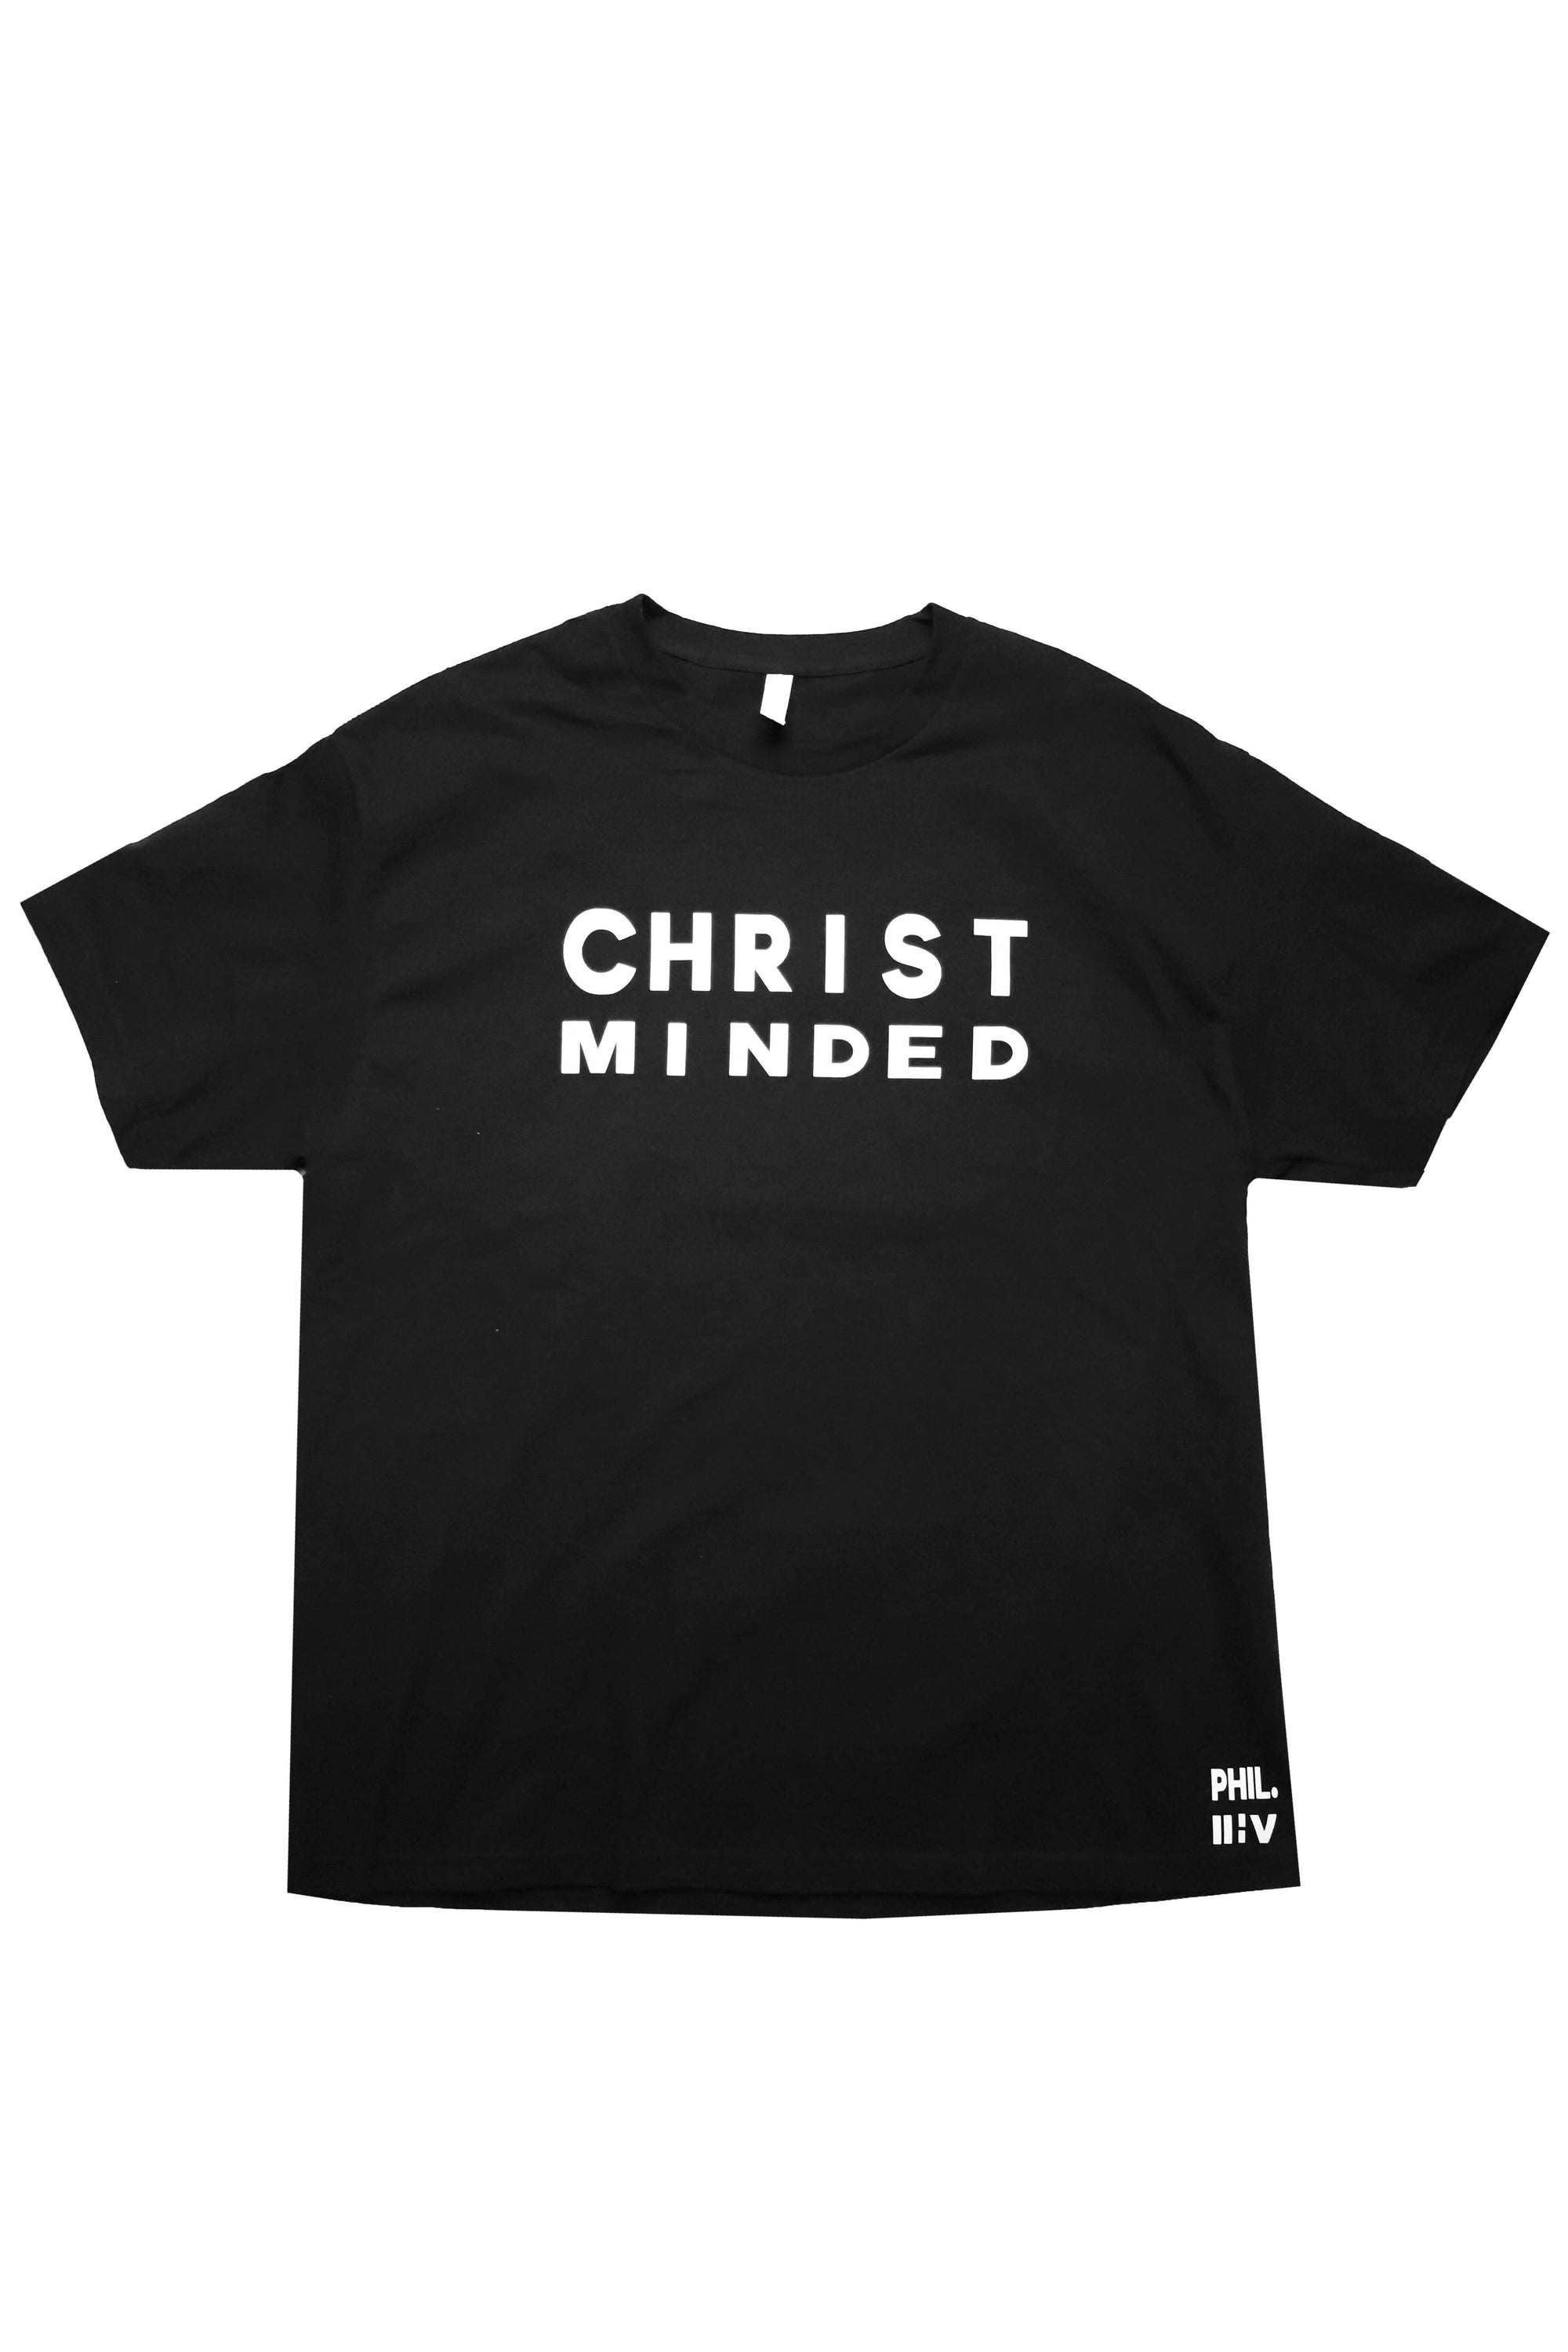 Men's Christ Minded T-Shirt